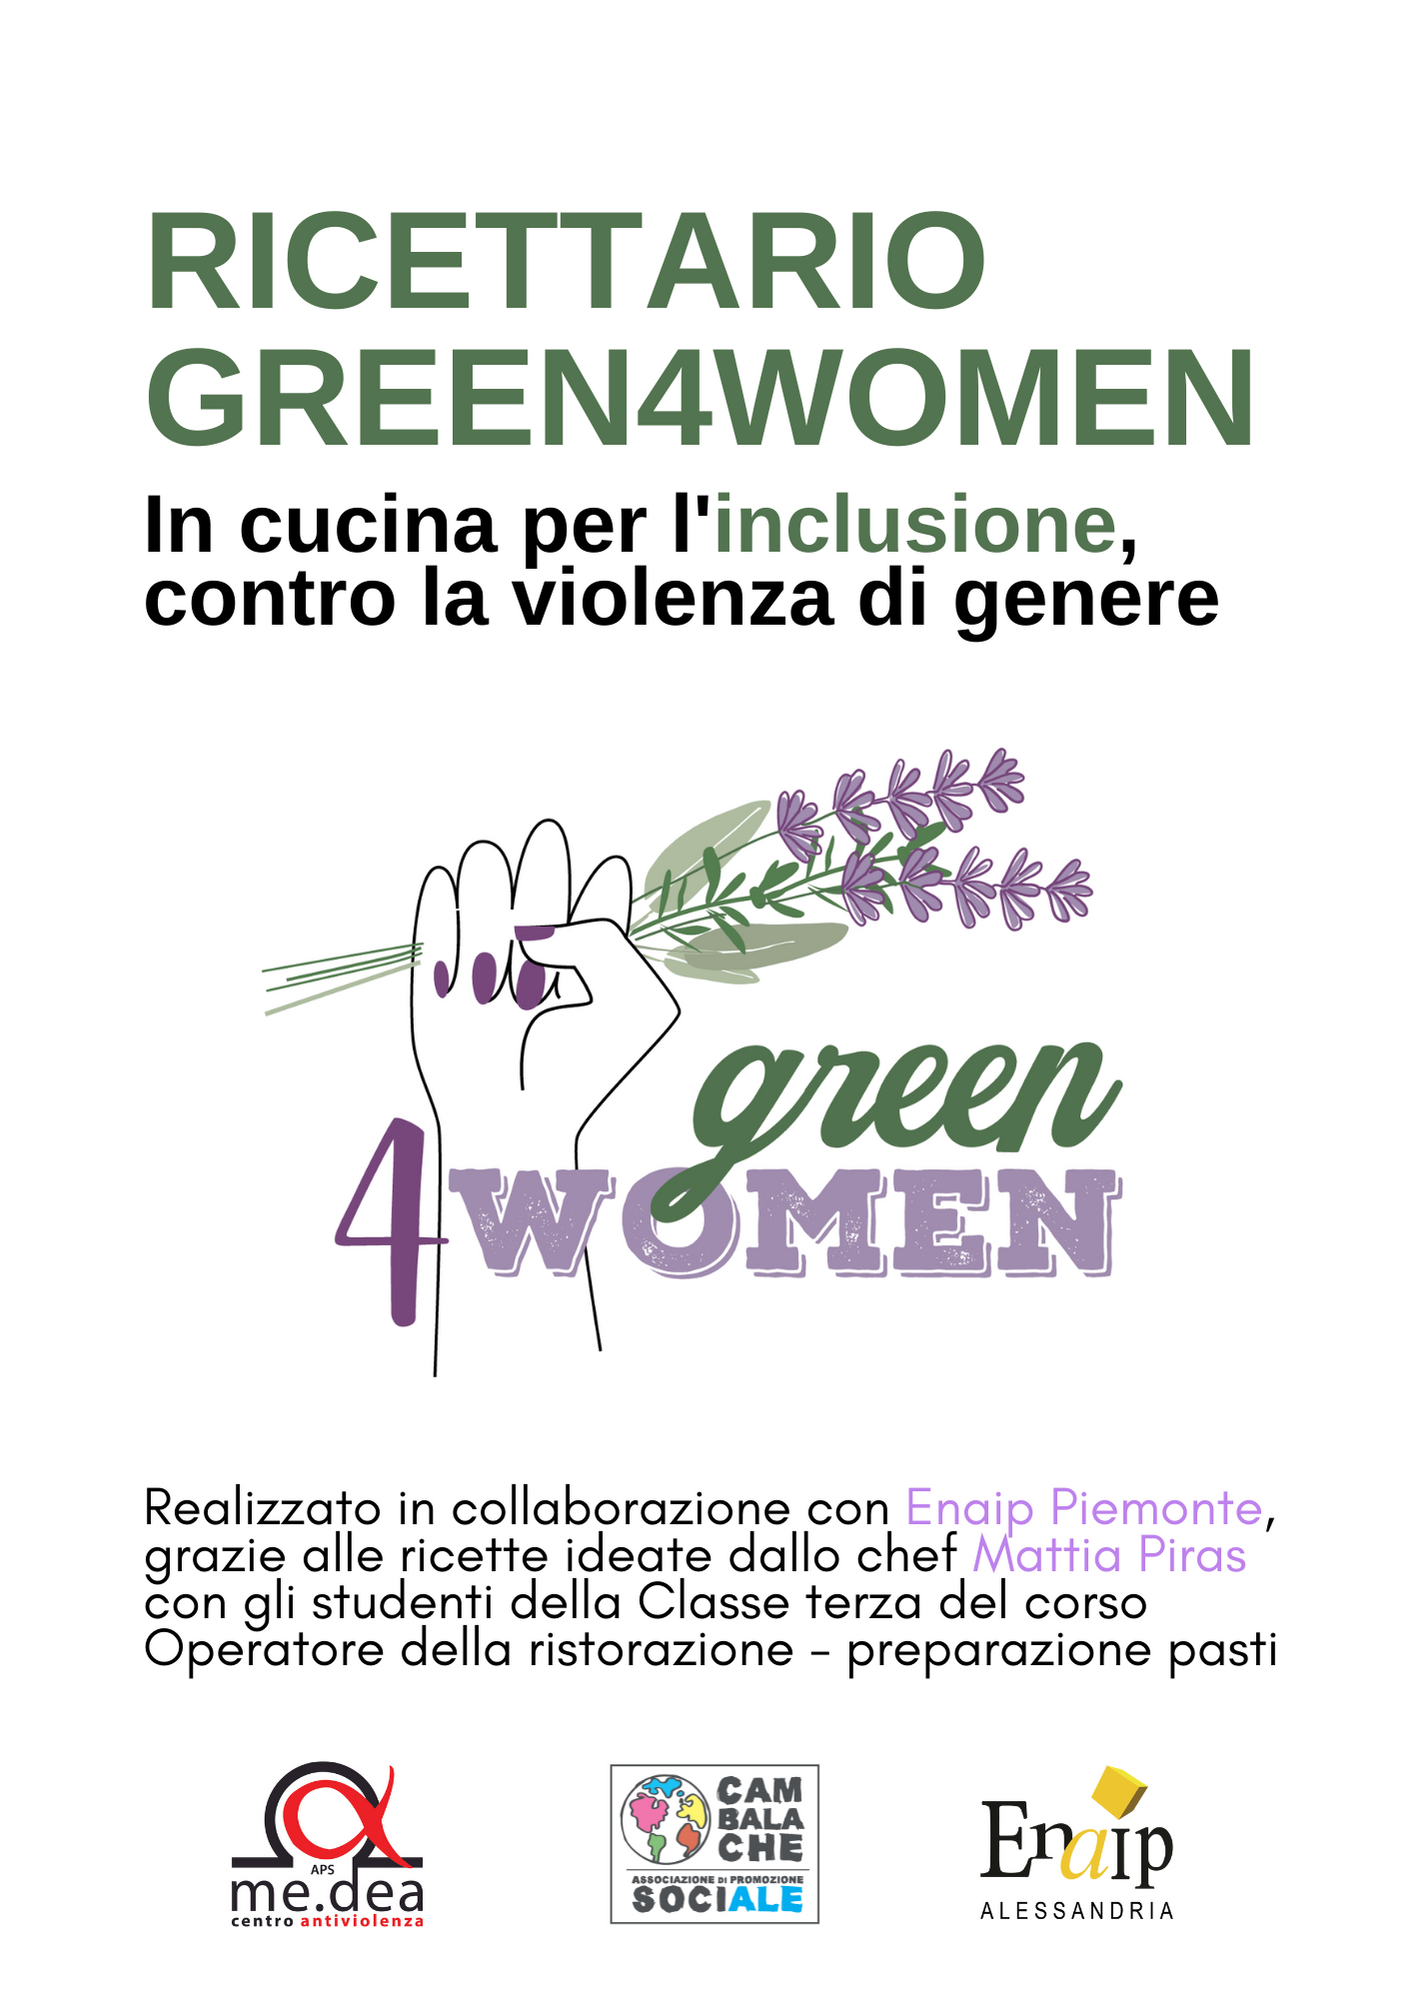 Dal progetto sociale alla cucina: ecco il Ricettario di Green4Women